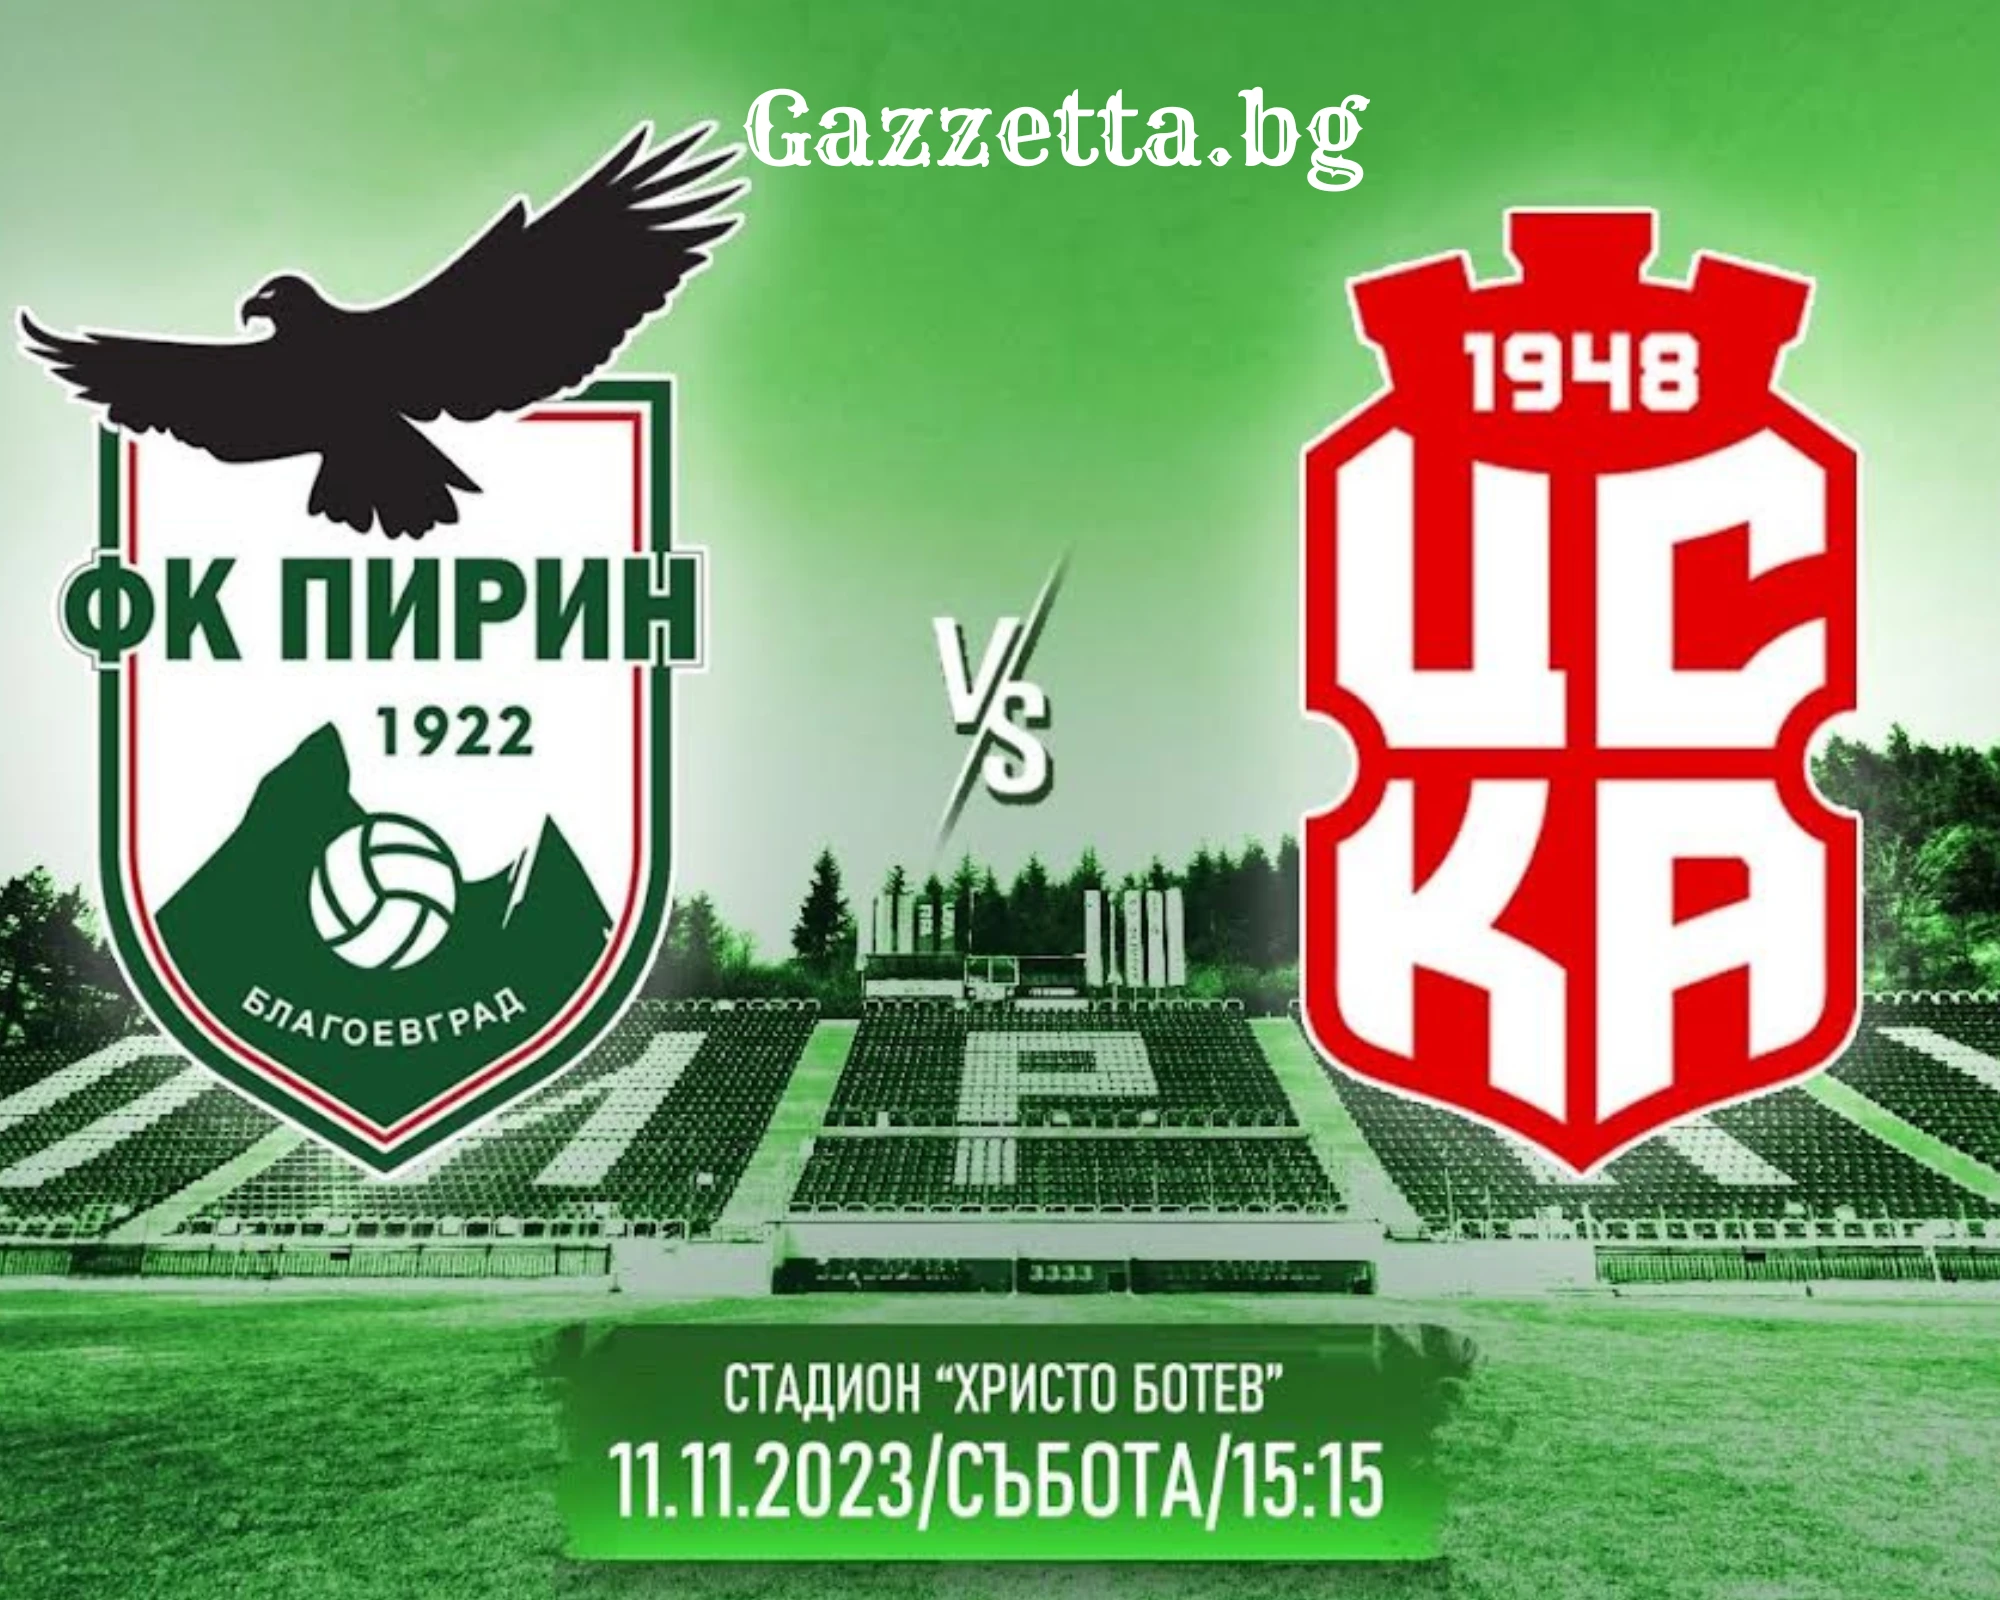 Пирин - ЦСКА 1948, два отбора на различни полюси